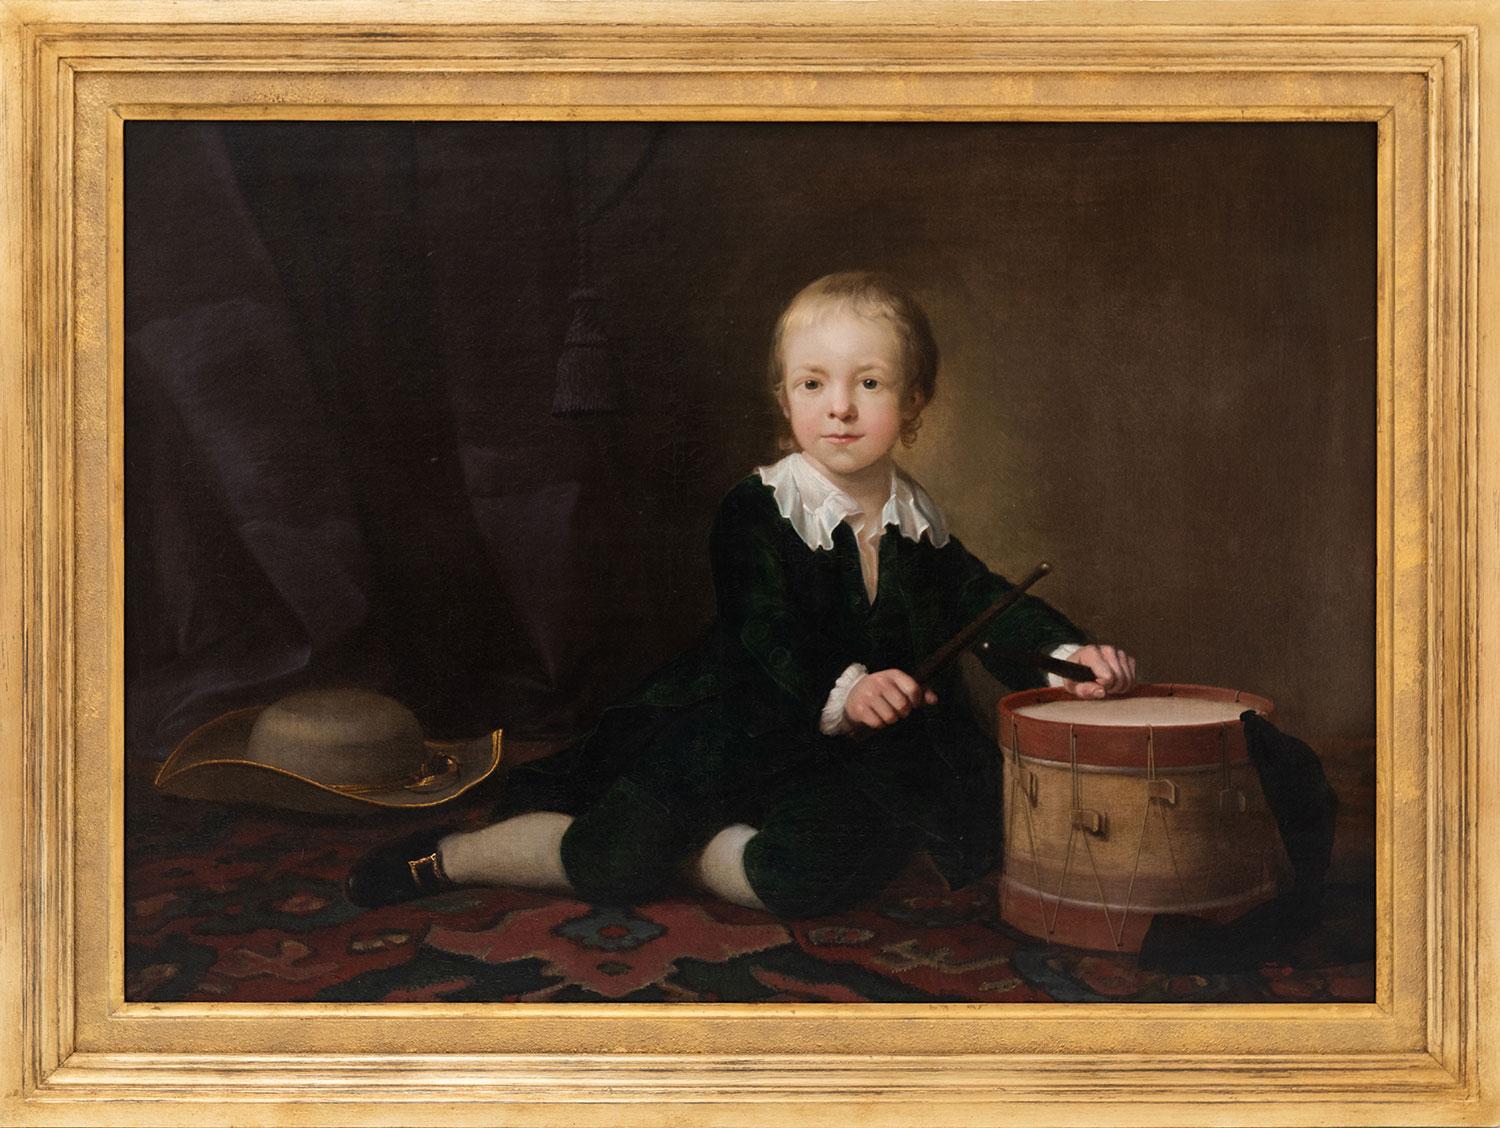 Portrait de Daniel Giles du 18e siècle en tant qu'enfant, jouant du tambour. - Painting de Katherine Read